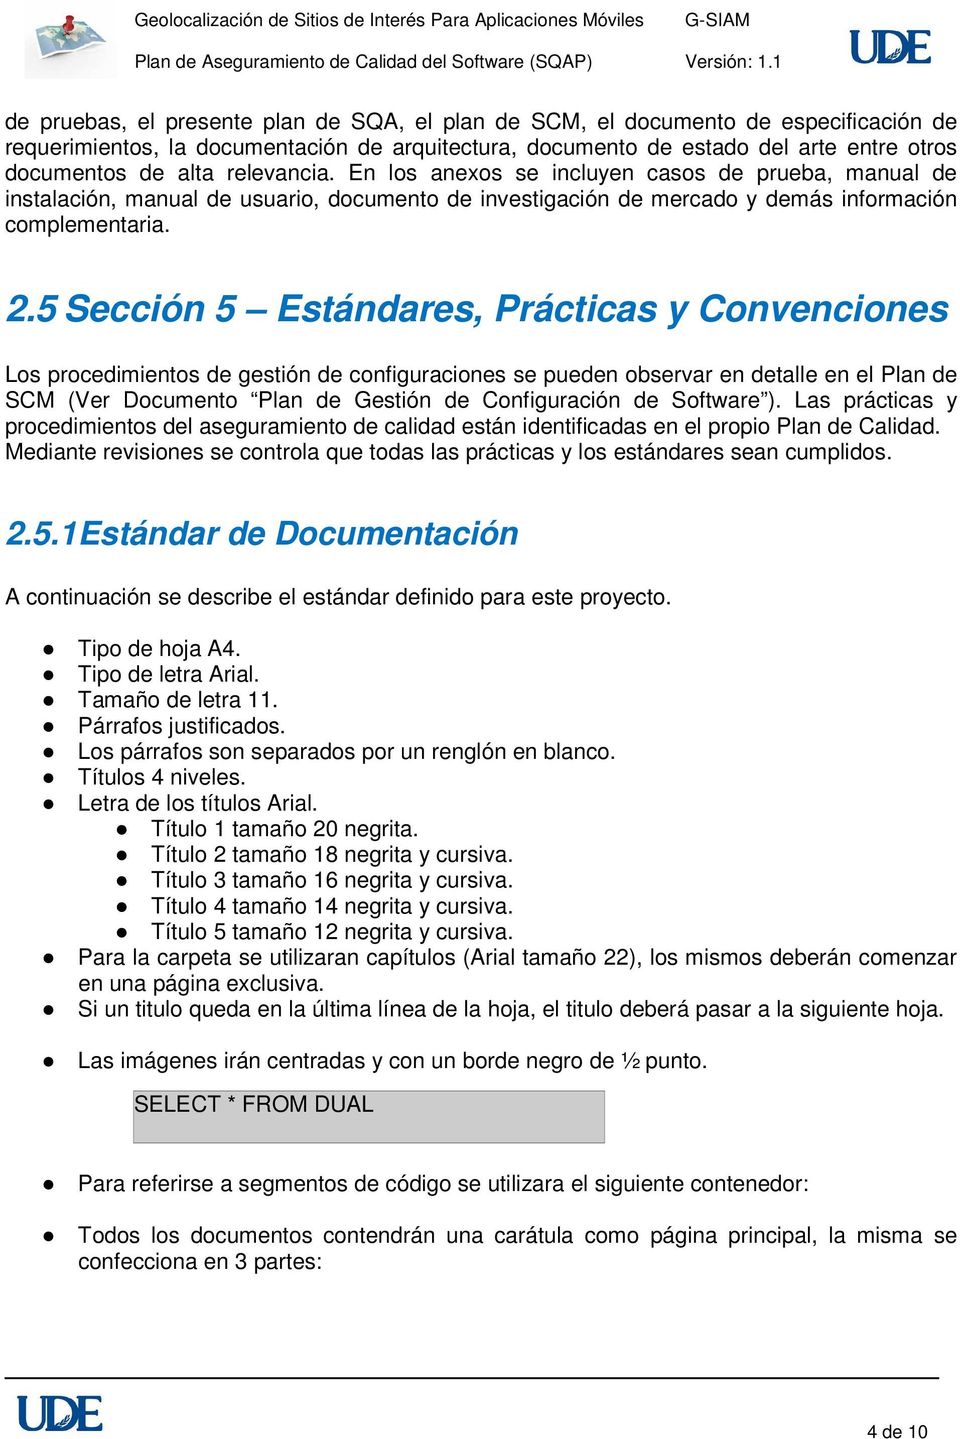 5 Sección 5 Estándares, Prácticas y Convenciones Los procedimientos de gestión de configuraciones se pueden observar en detalle en el Plan de SCM (Ver Documento Plan de Gestión de Configuración de